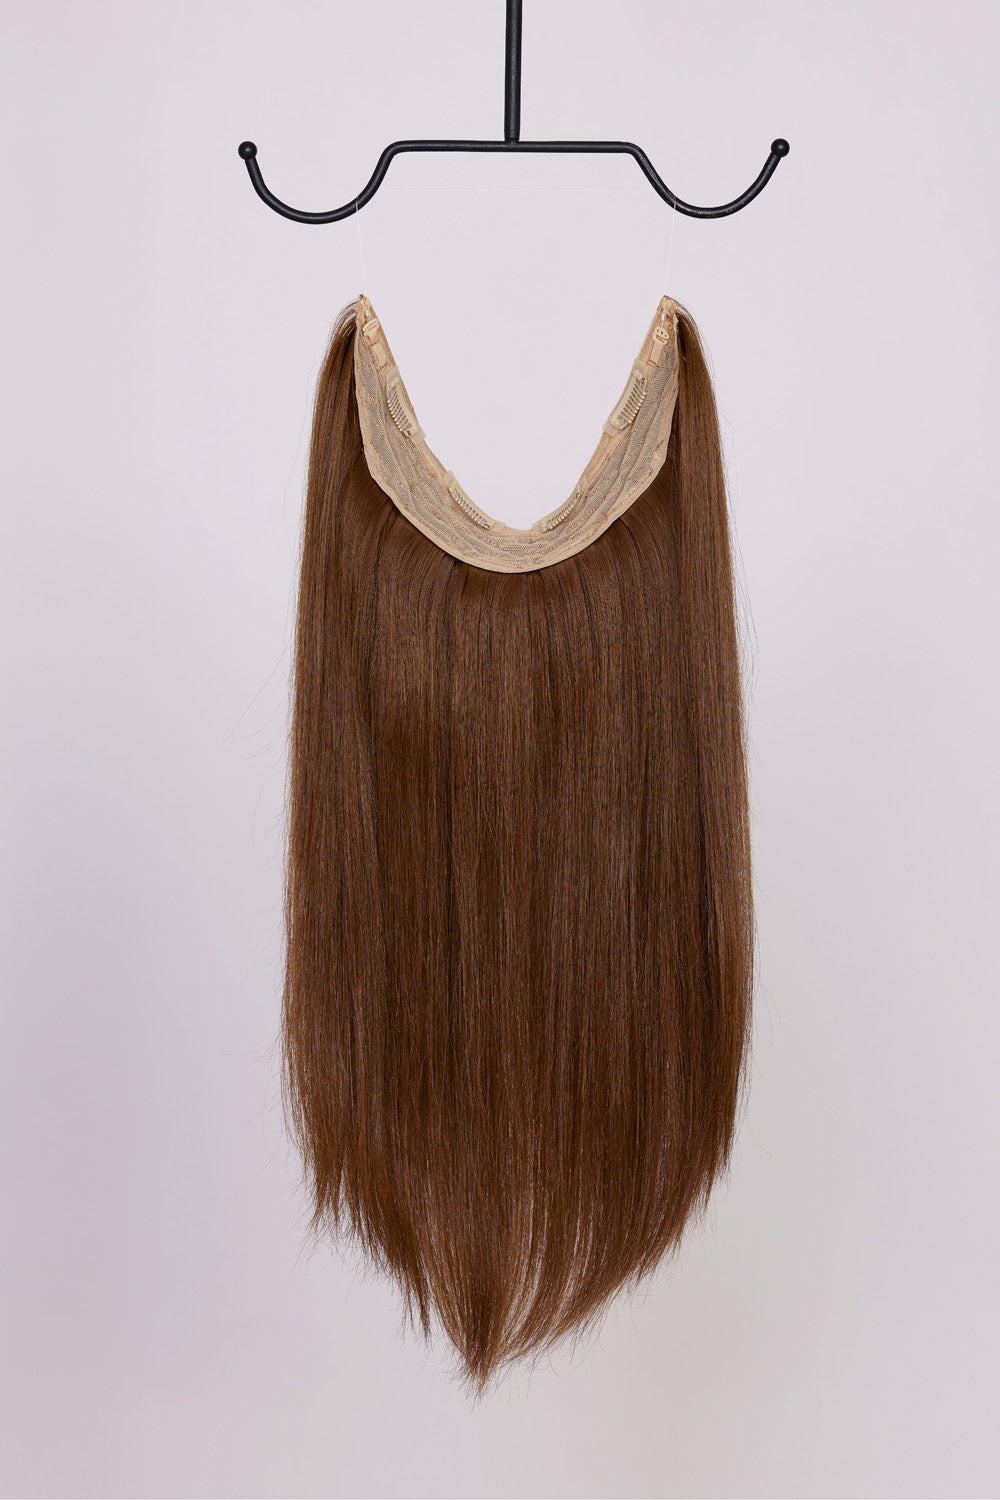 BHBD Hårband: I en varmare brun, 40 cm långt. 100% äkta Remy hår. Kan användas som clip-on, halo eller ponytail.